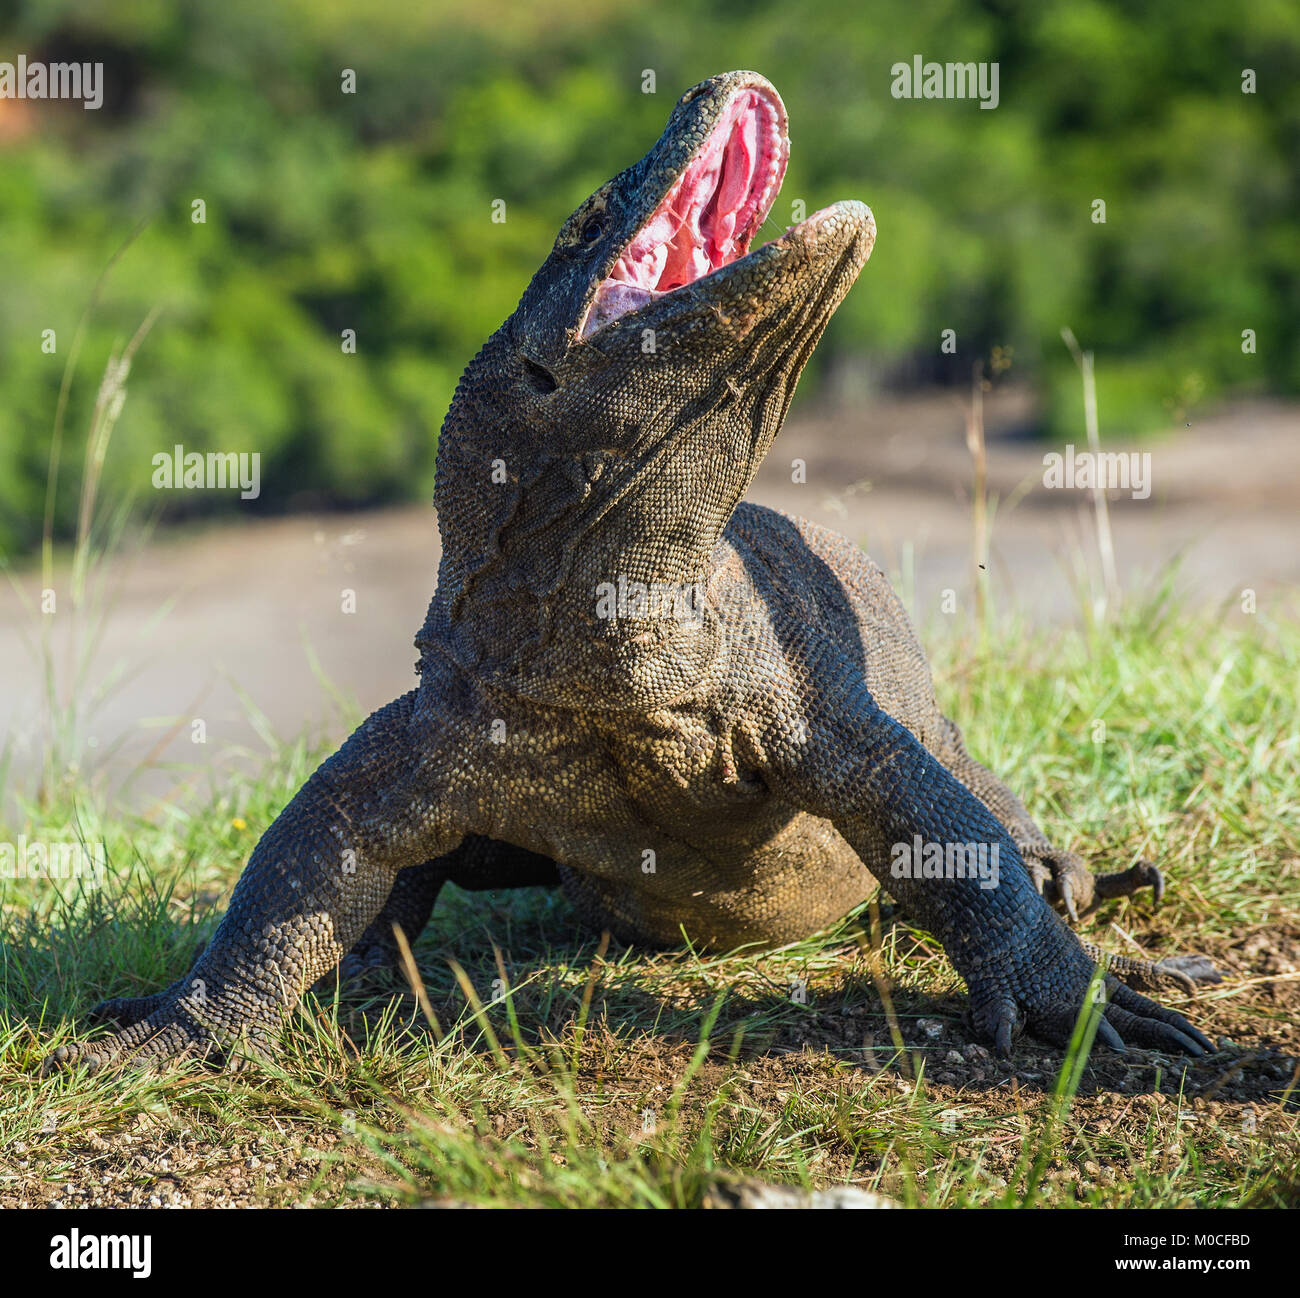 Il drago di Komodo Varanus komodoensis sollevata la testa con la bocca aperta. È la più grande lucertola vivente nel mondo. Isola Rinca. Indonesia. Foto Stock